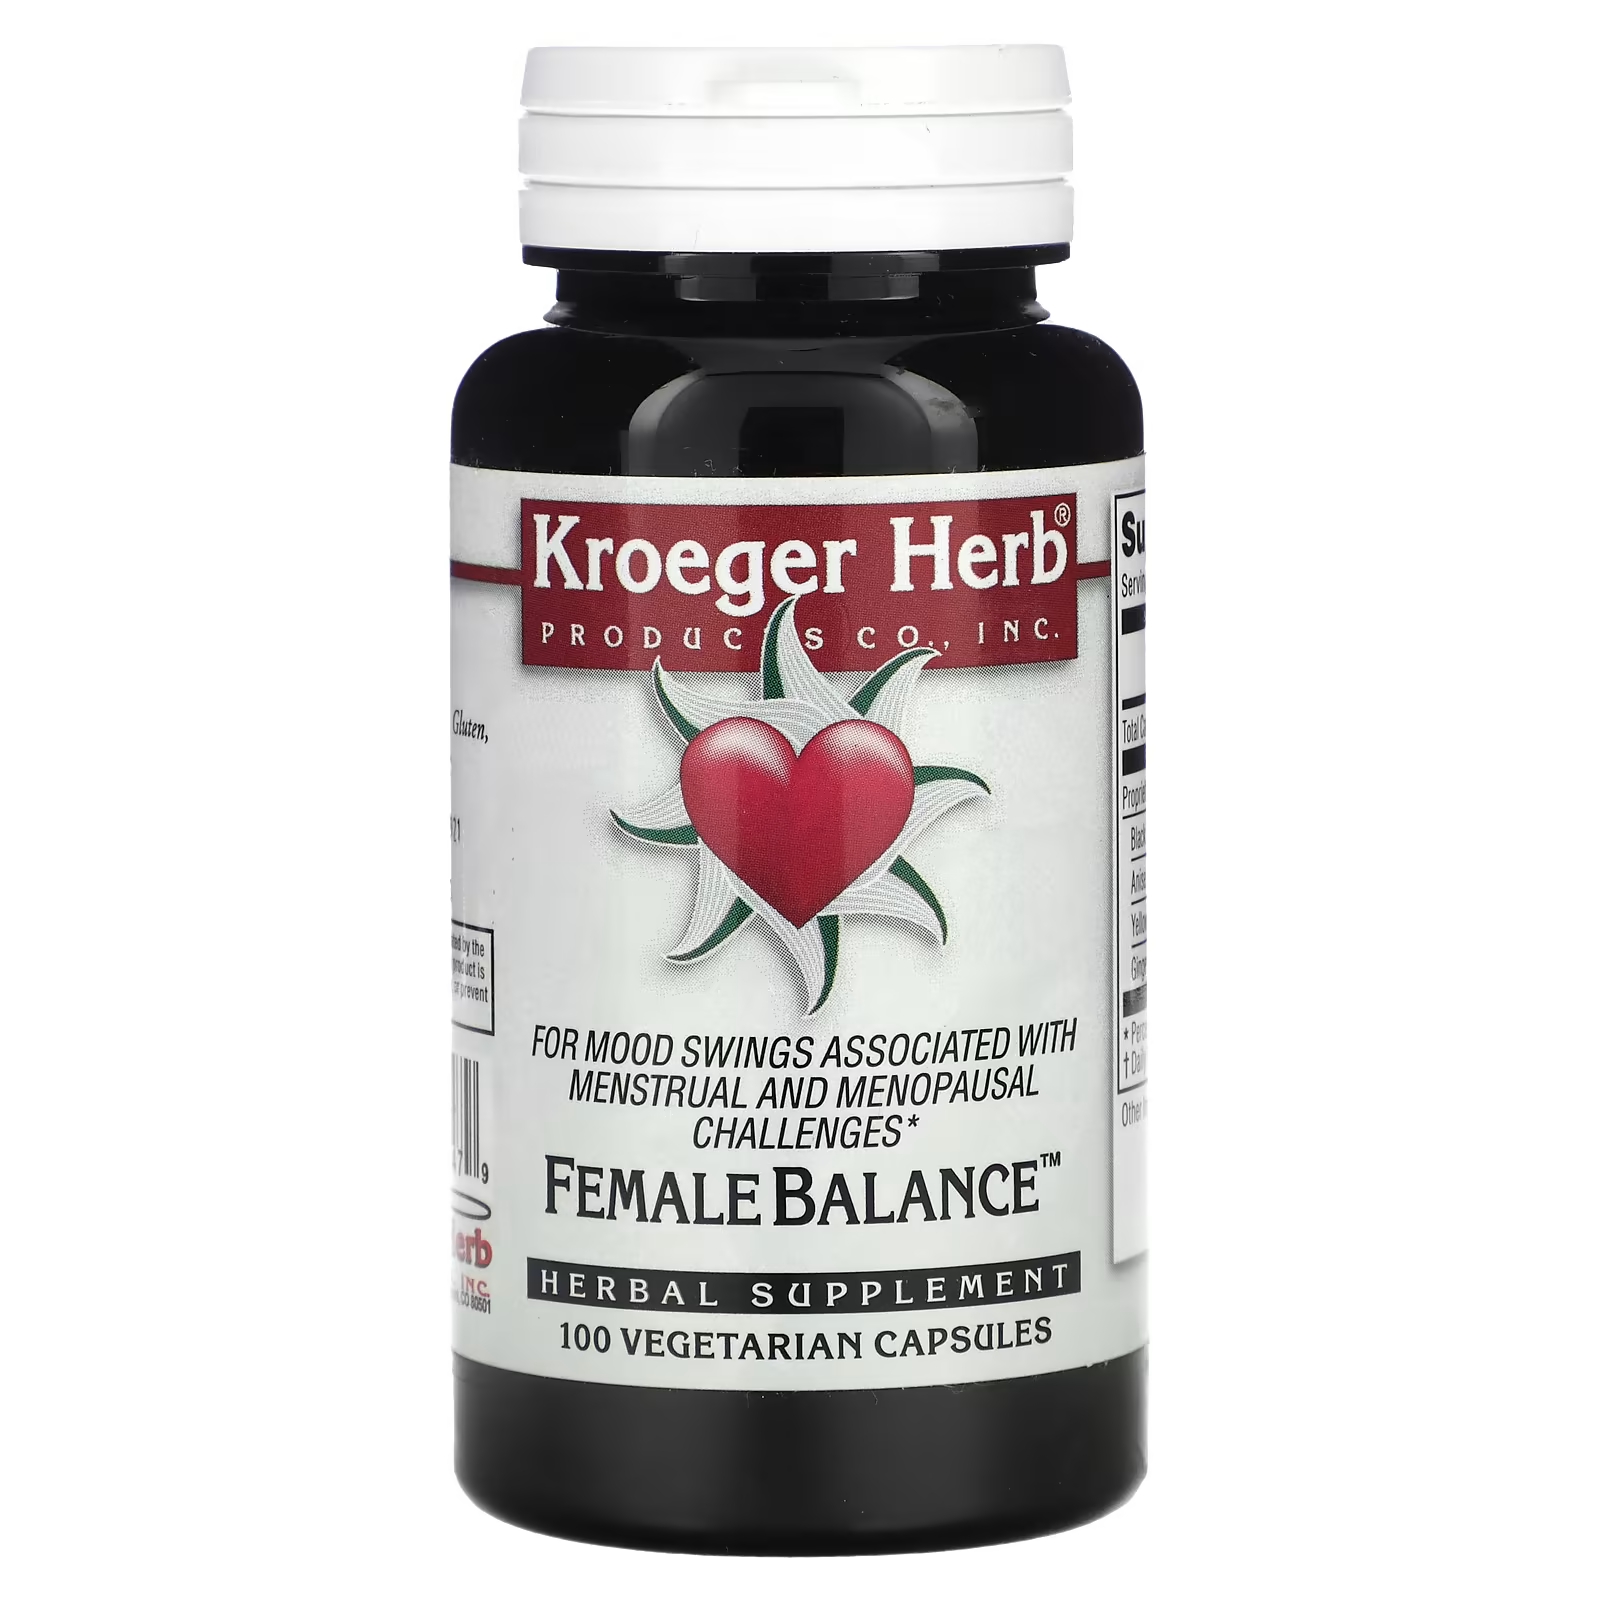 Растительная добавка Kroeger Herb Co женский баланс, 100 капсул растительная добавка kroeger herb co enzymes 100 капсул